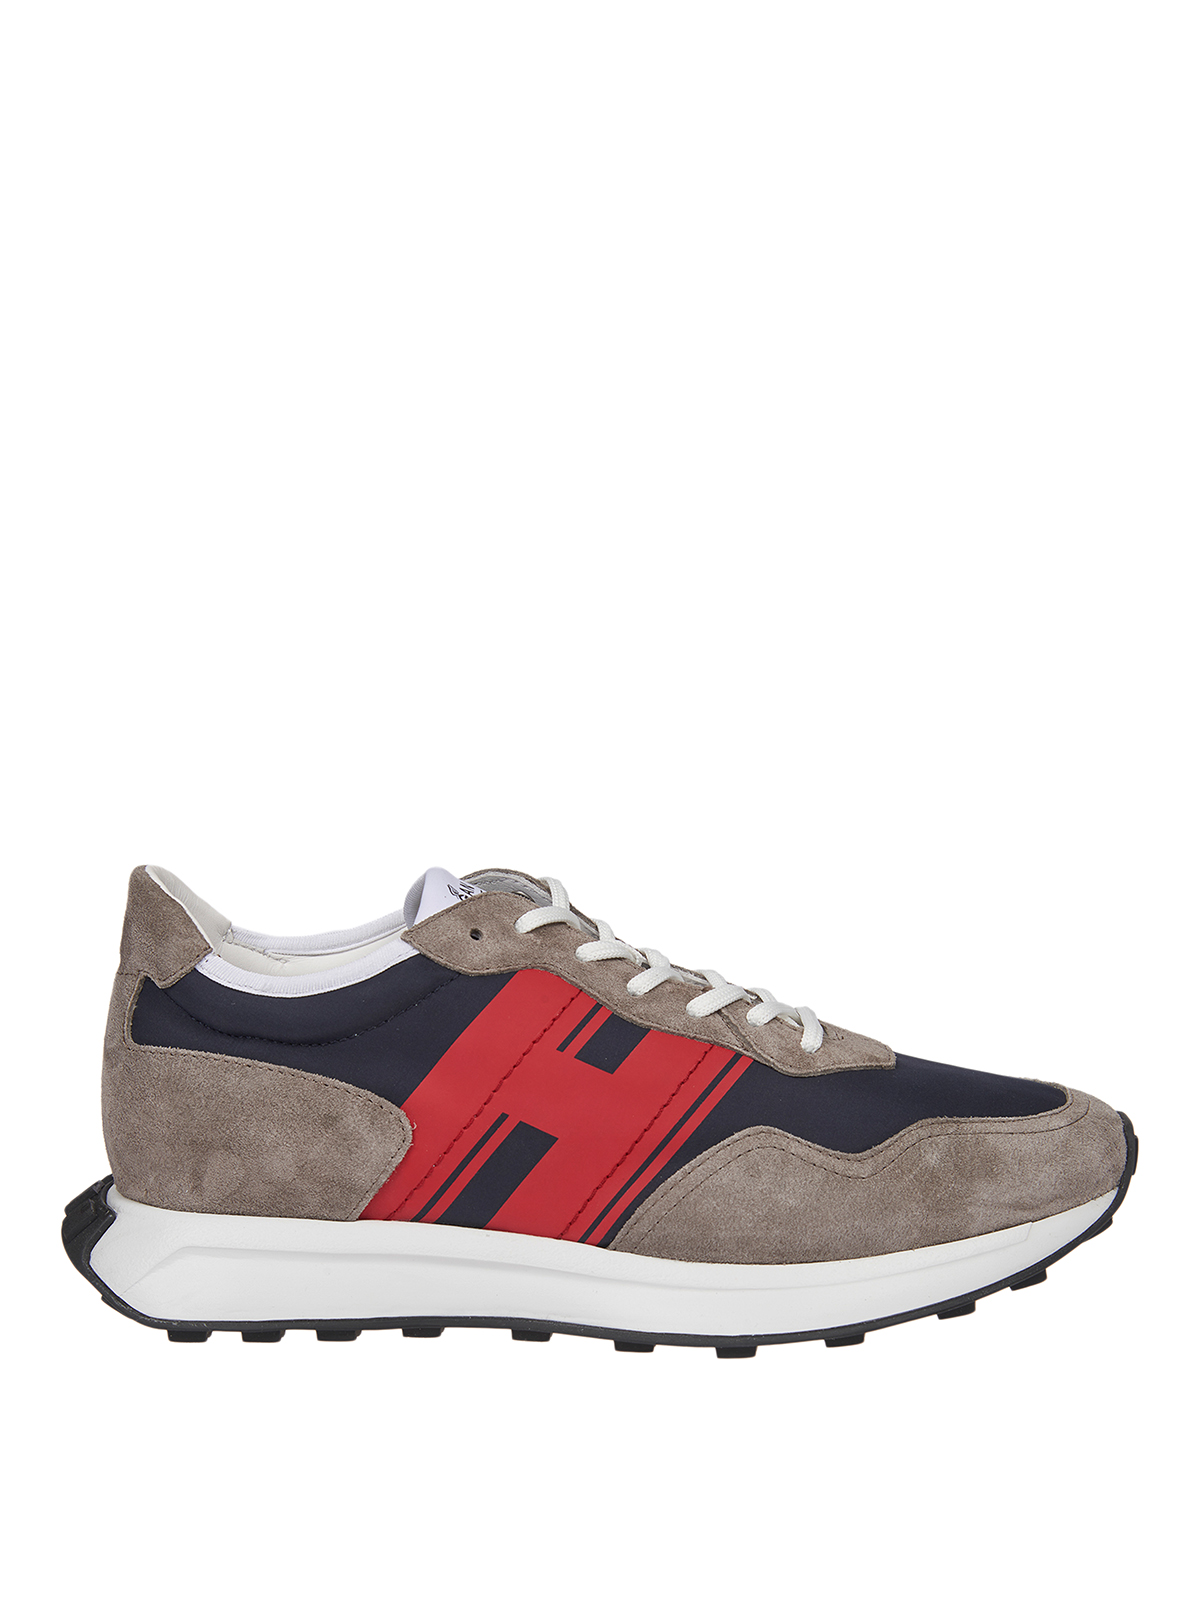 Trainers Hogan - H601 sneakers - HXM6010EG00N3K368Y | Shop online at iKRIX